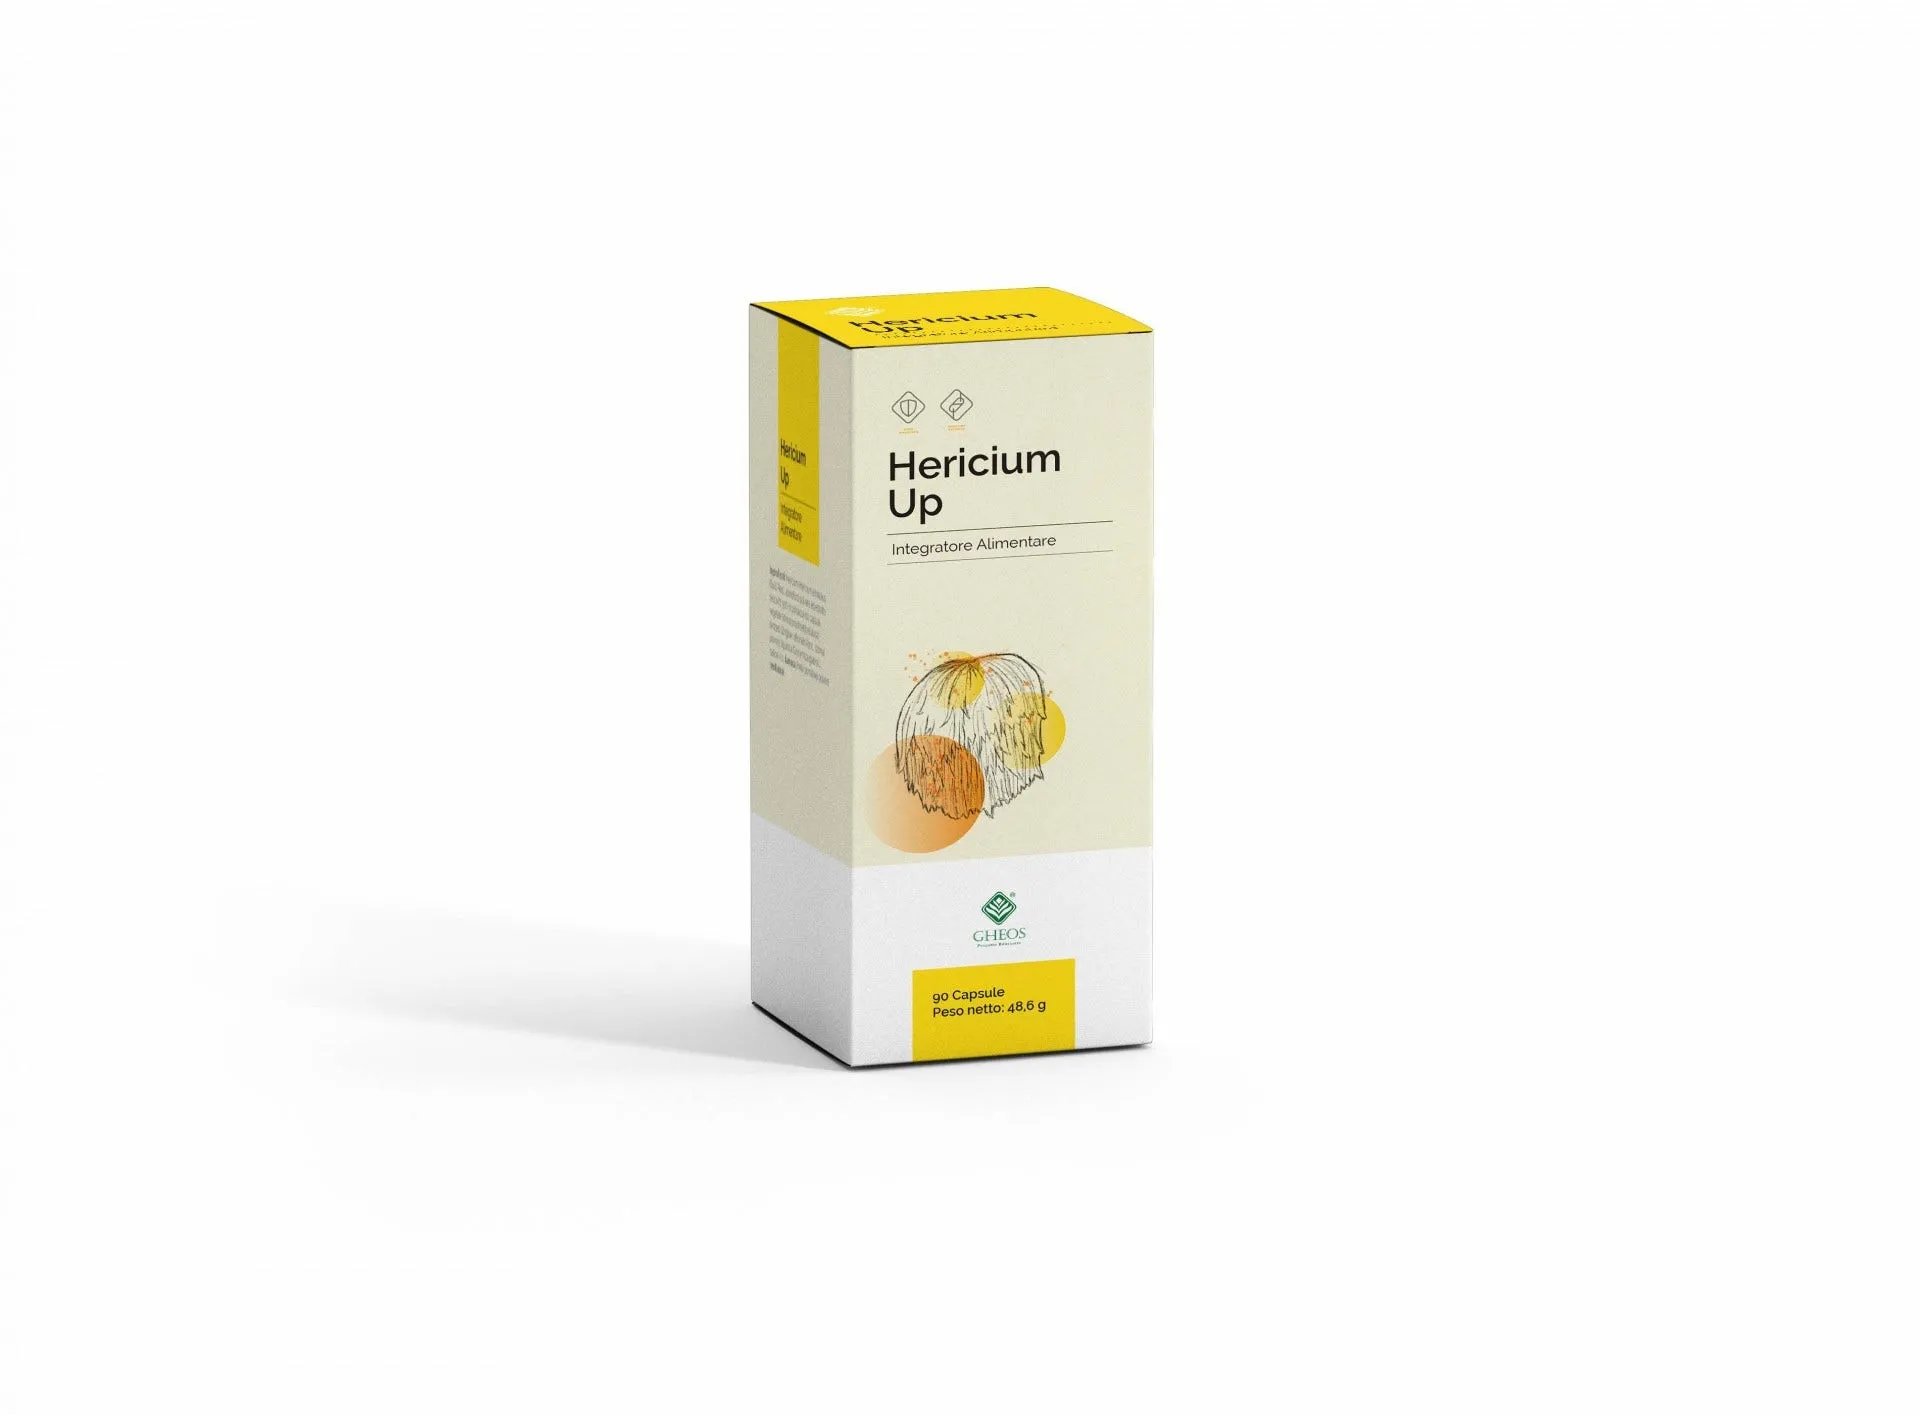 Hericium Up Integratore Digestivo 90 Capsule 